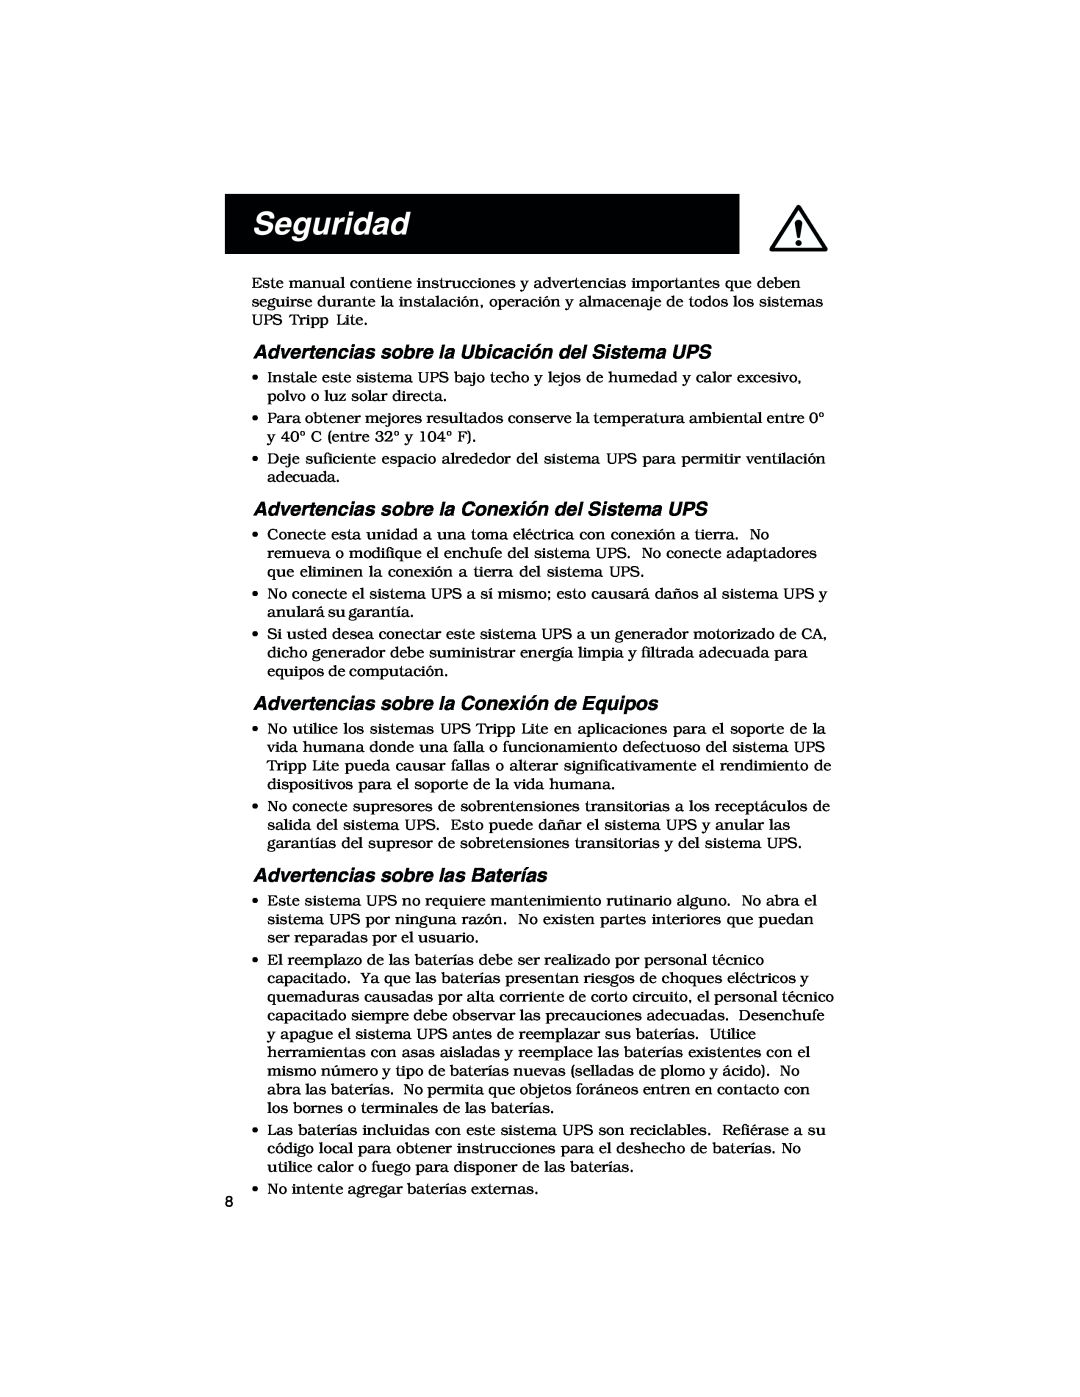 Tripp Lite 450-1400VA Seguridad, Advertencias sobre la Ubicación del Sistema UPS, Advertencias sobre las Baterías 